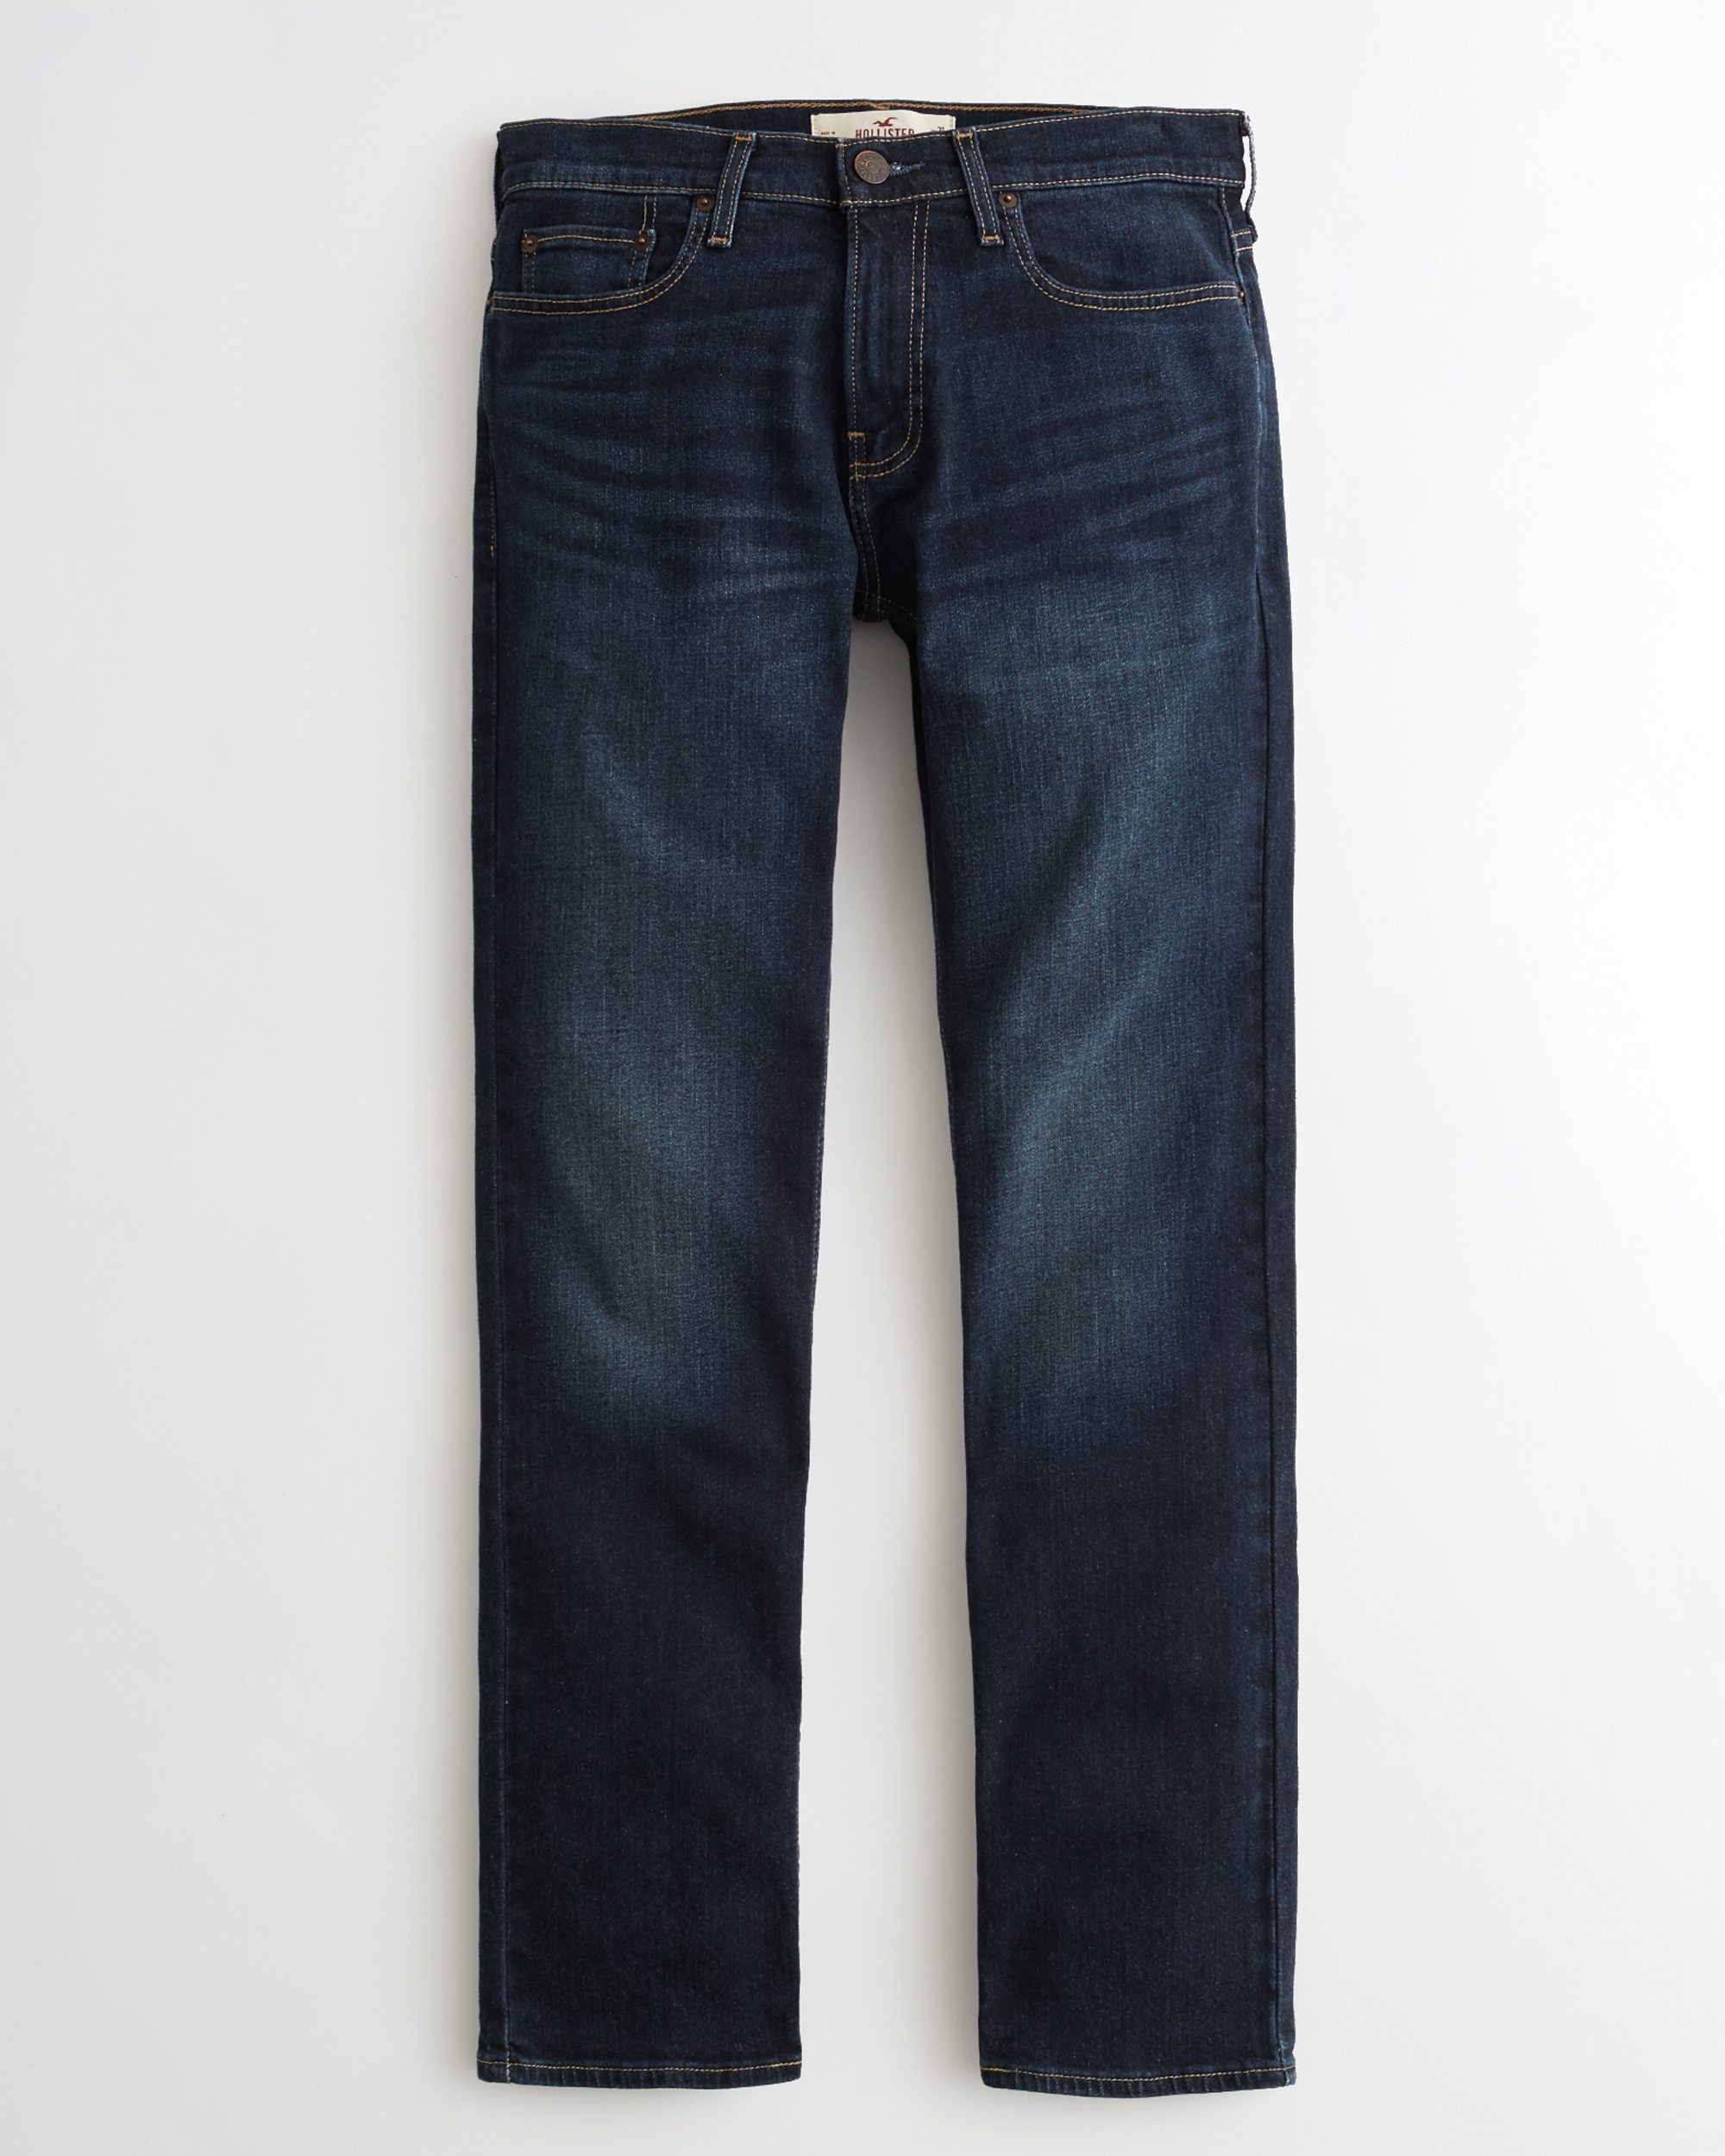 abercrombie short jeans